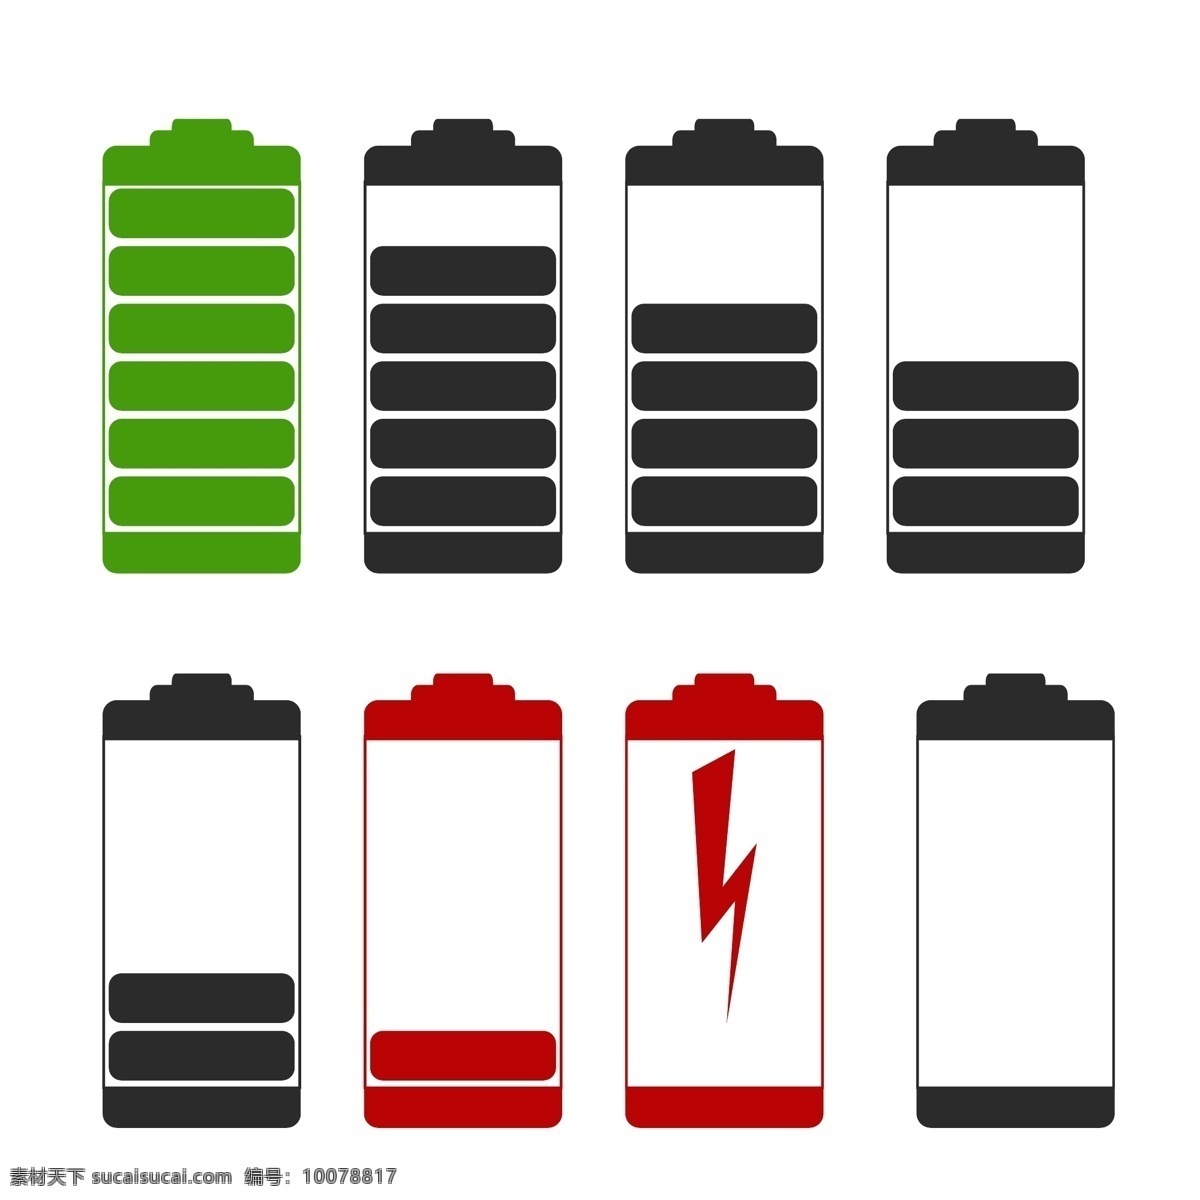 彩色 电池 电量 图标 标志 矢量 蓄电池 干电池 充电 电源 电力 能源 动力 符号 图形 充电指示 彩色电池 icons 电池设计 文化艺术 绘画书法